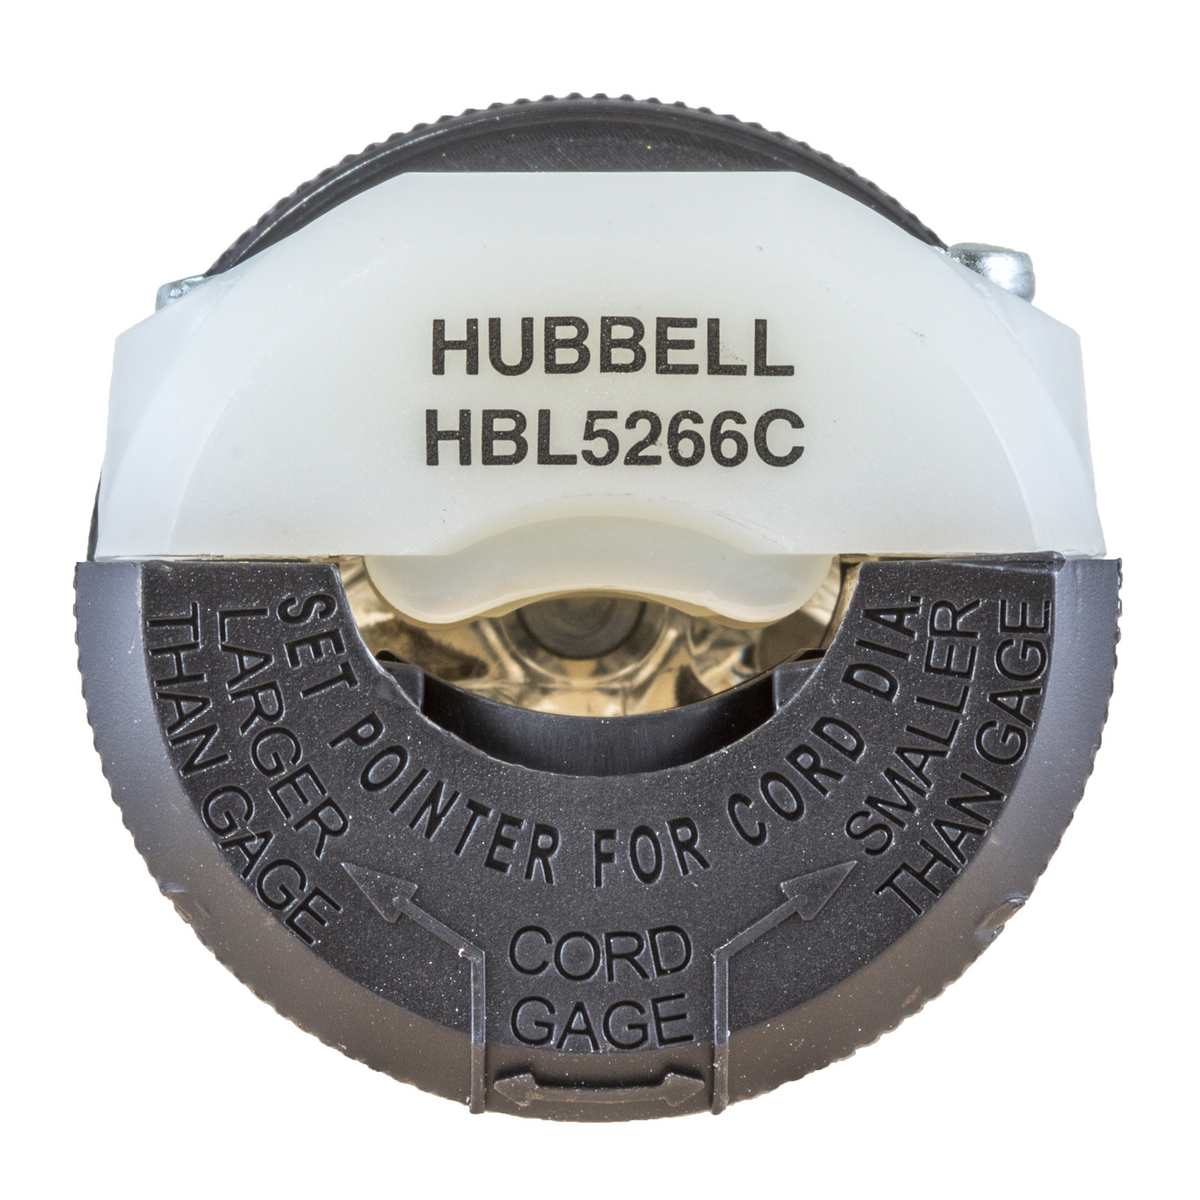 Hubbell HBL5266C 15A 125V 2P3W Grounding Straight Blade Insulgrip NEMA 5-15 Plug 